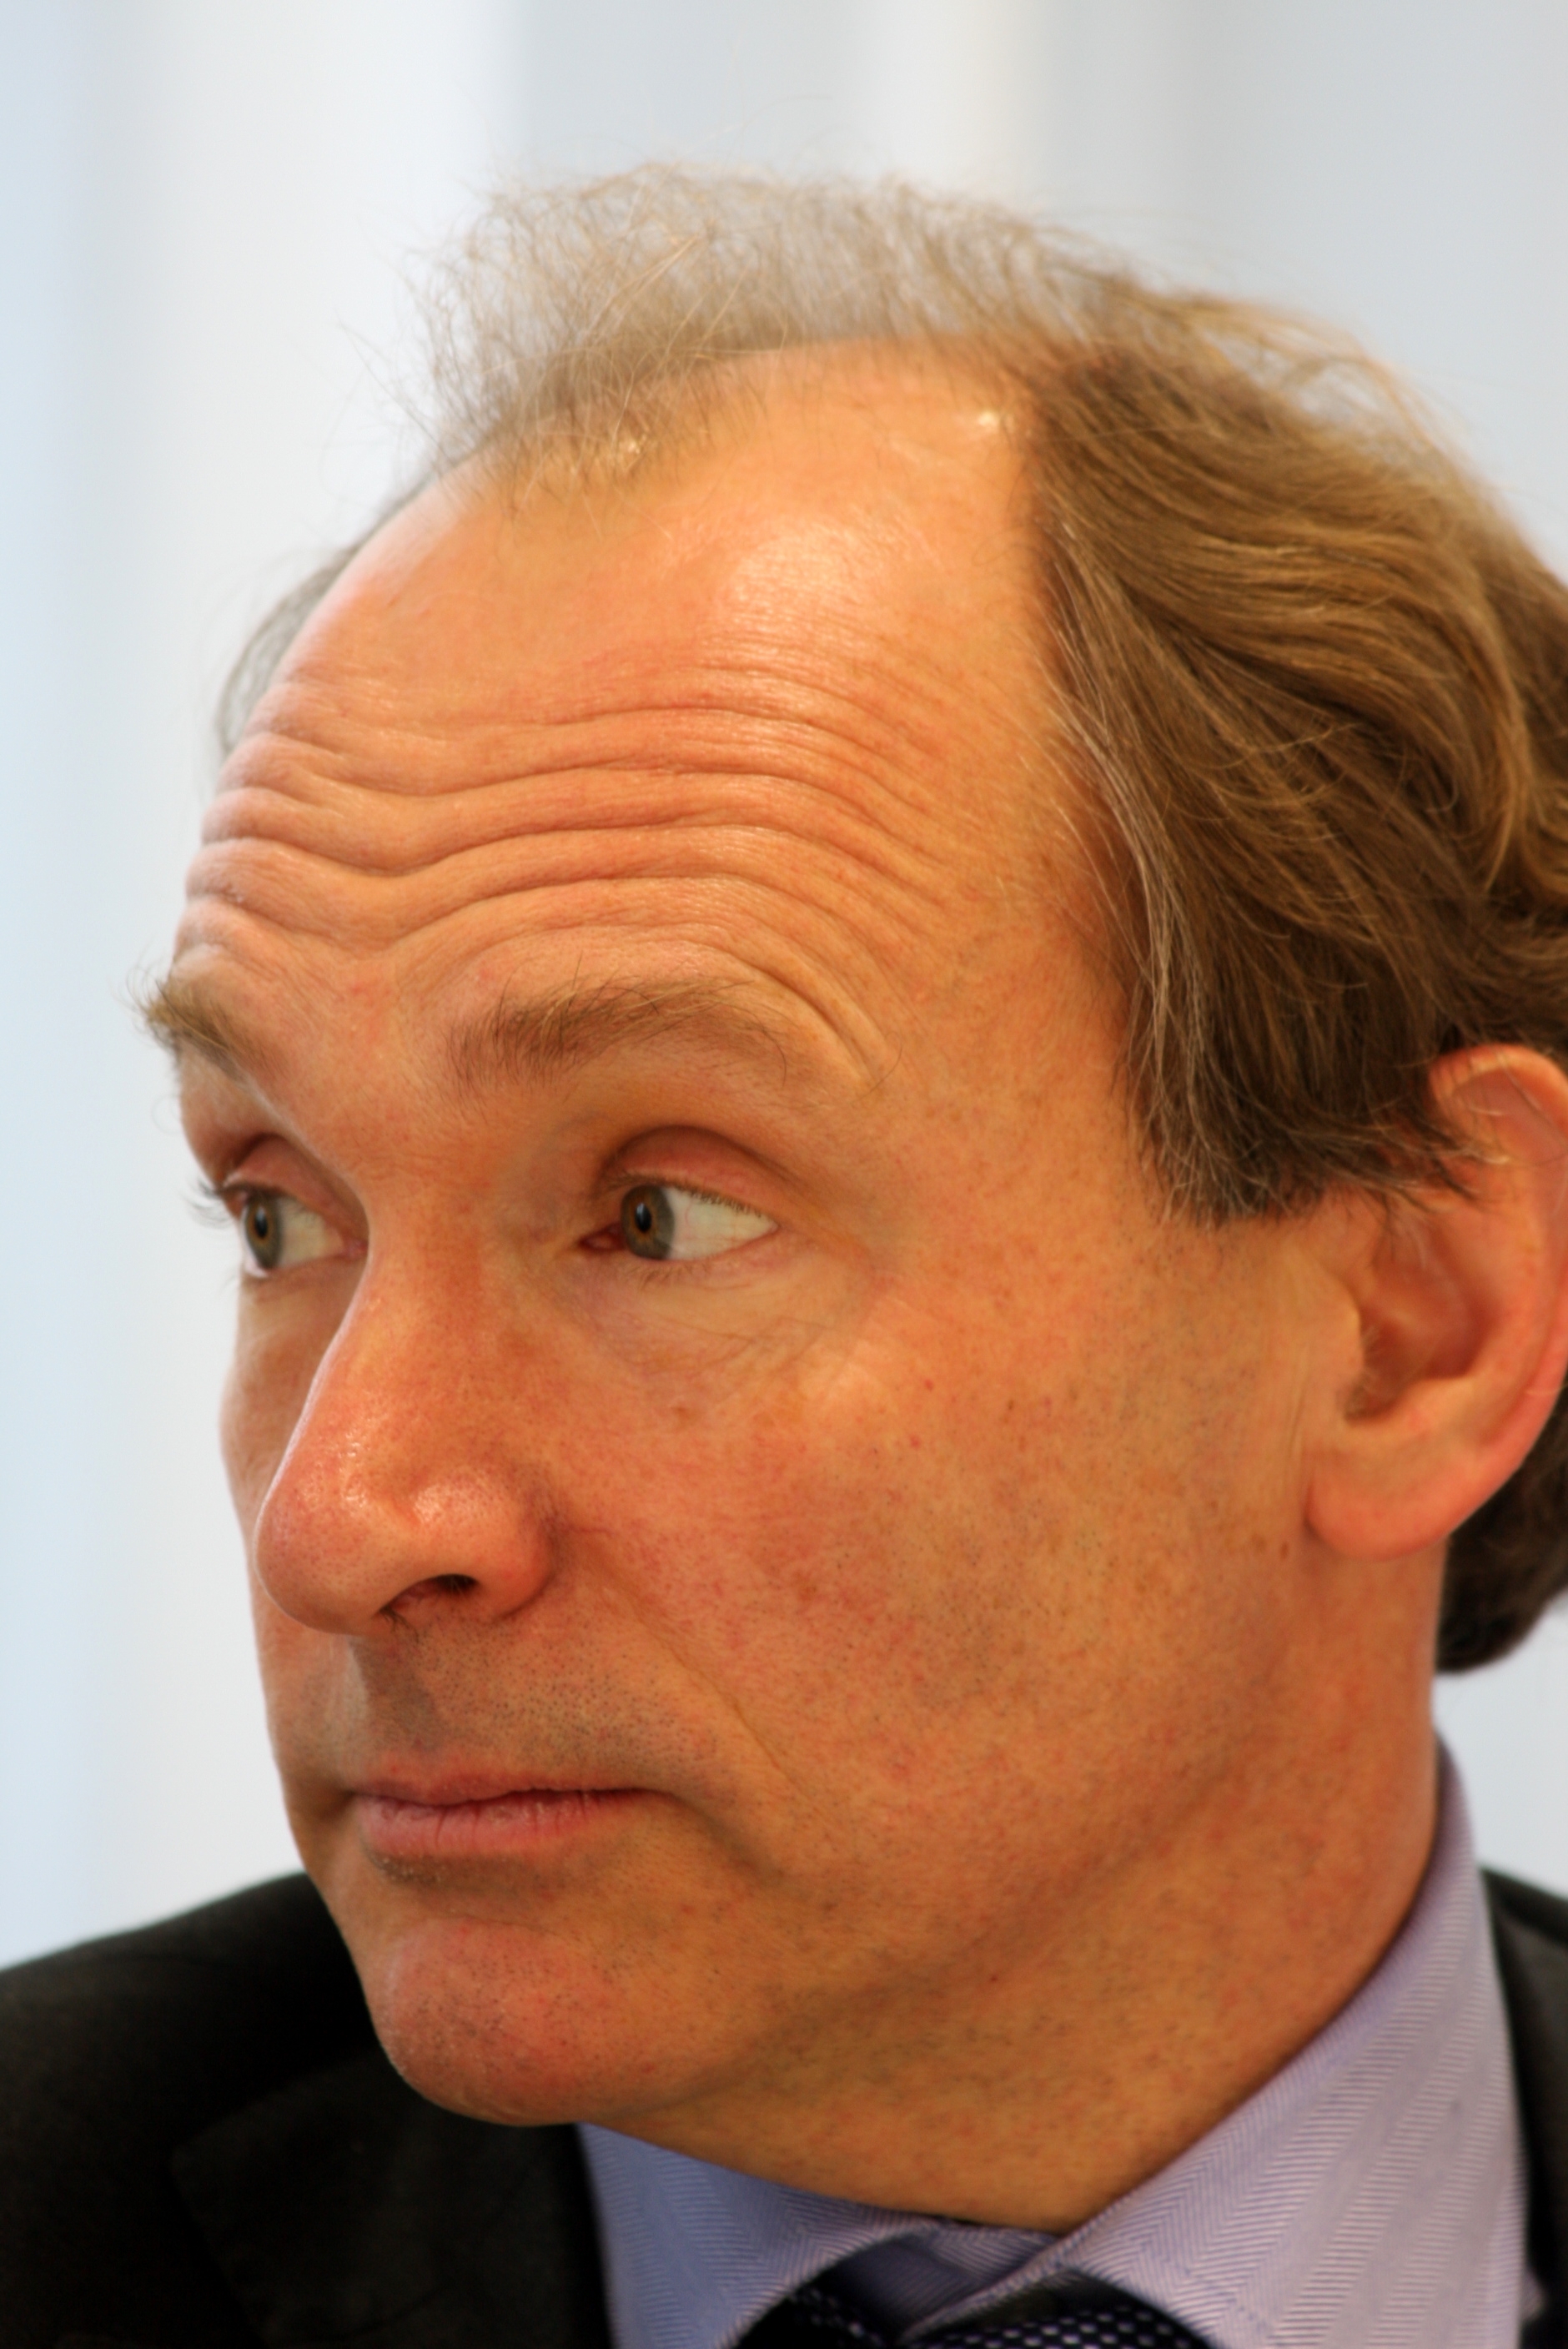 auteur Tim Berners-Lee de la citation La propriété intellectuelle est un problème juridique et culturel important. La société dans son ensemble a des problèmes complexes à affronter ici: la propriété privée vs open source, etc.